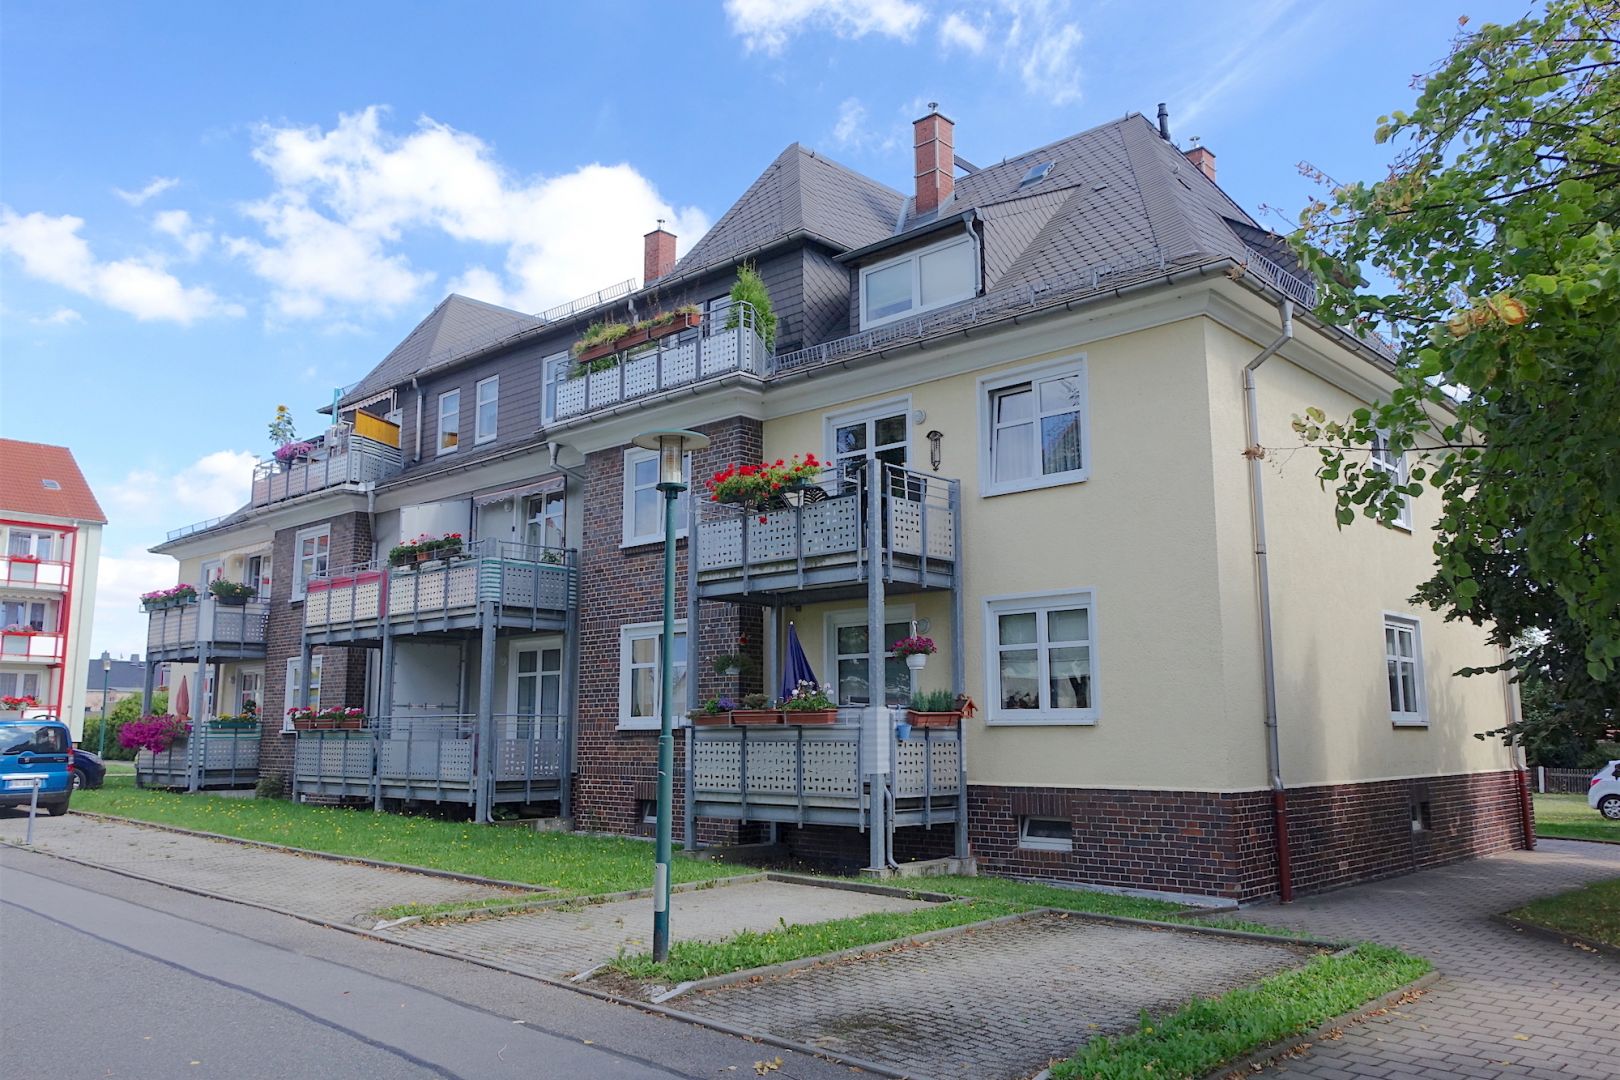 Immobilien Referenzen Chemnitz Realis Chemnitz Realis